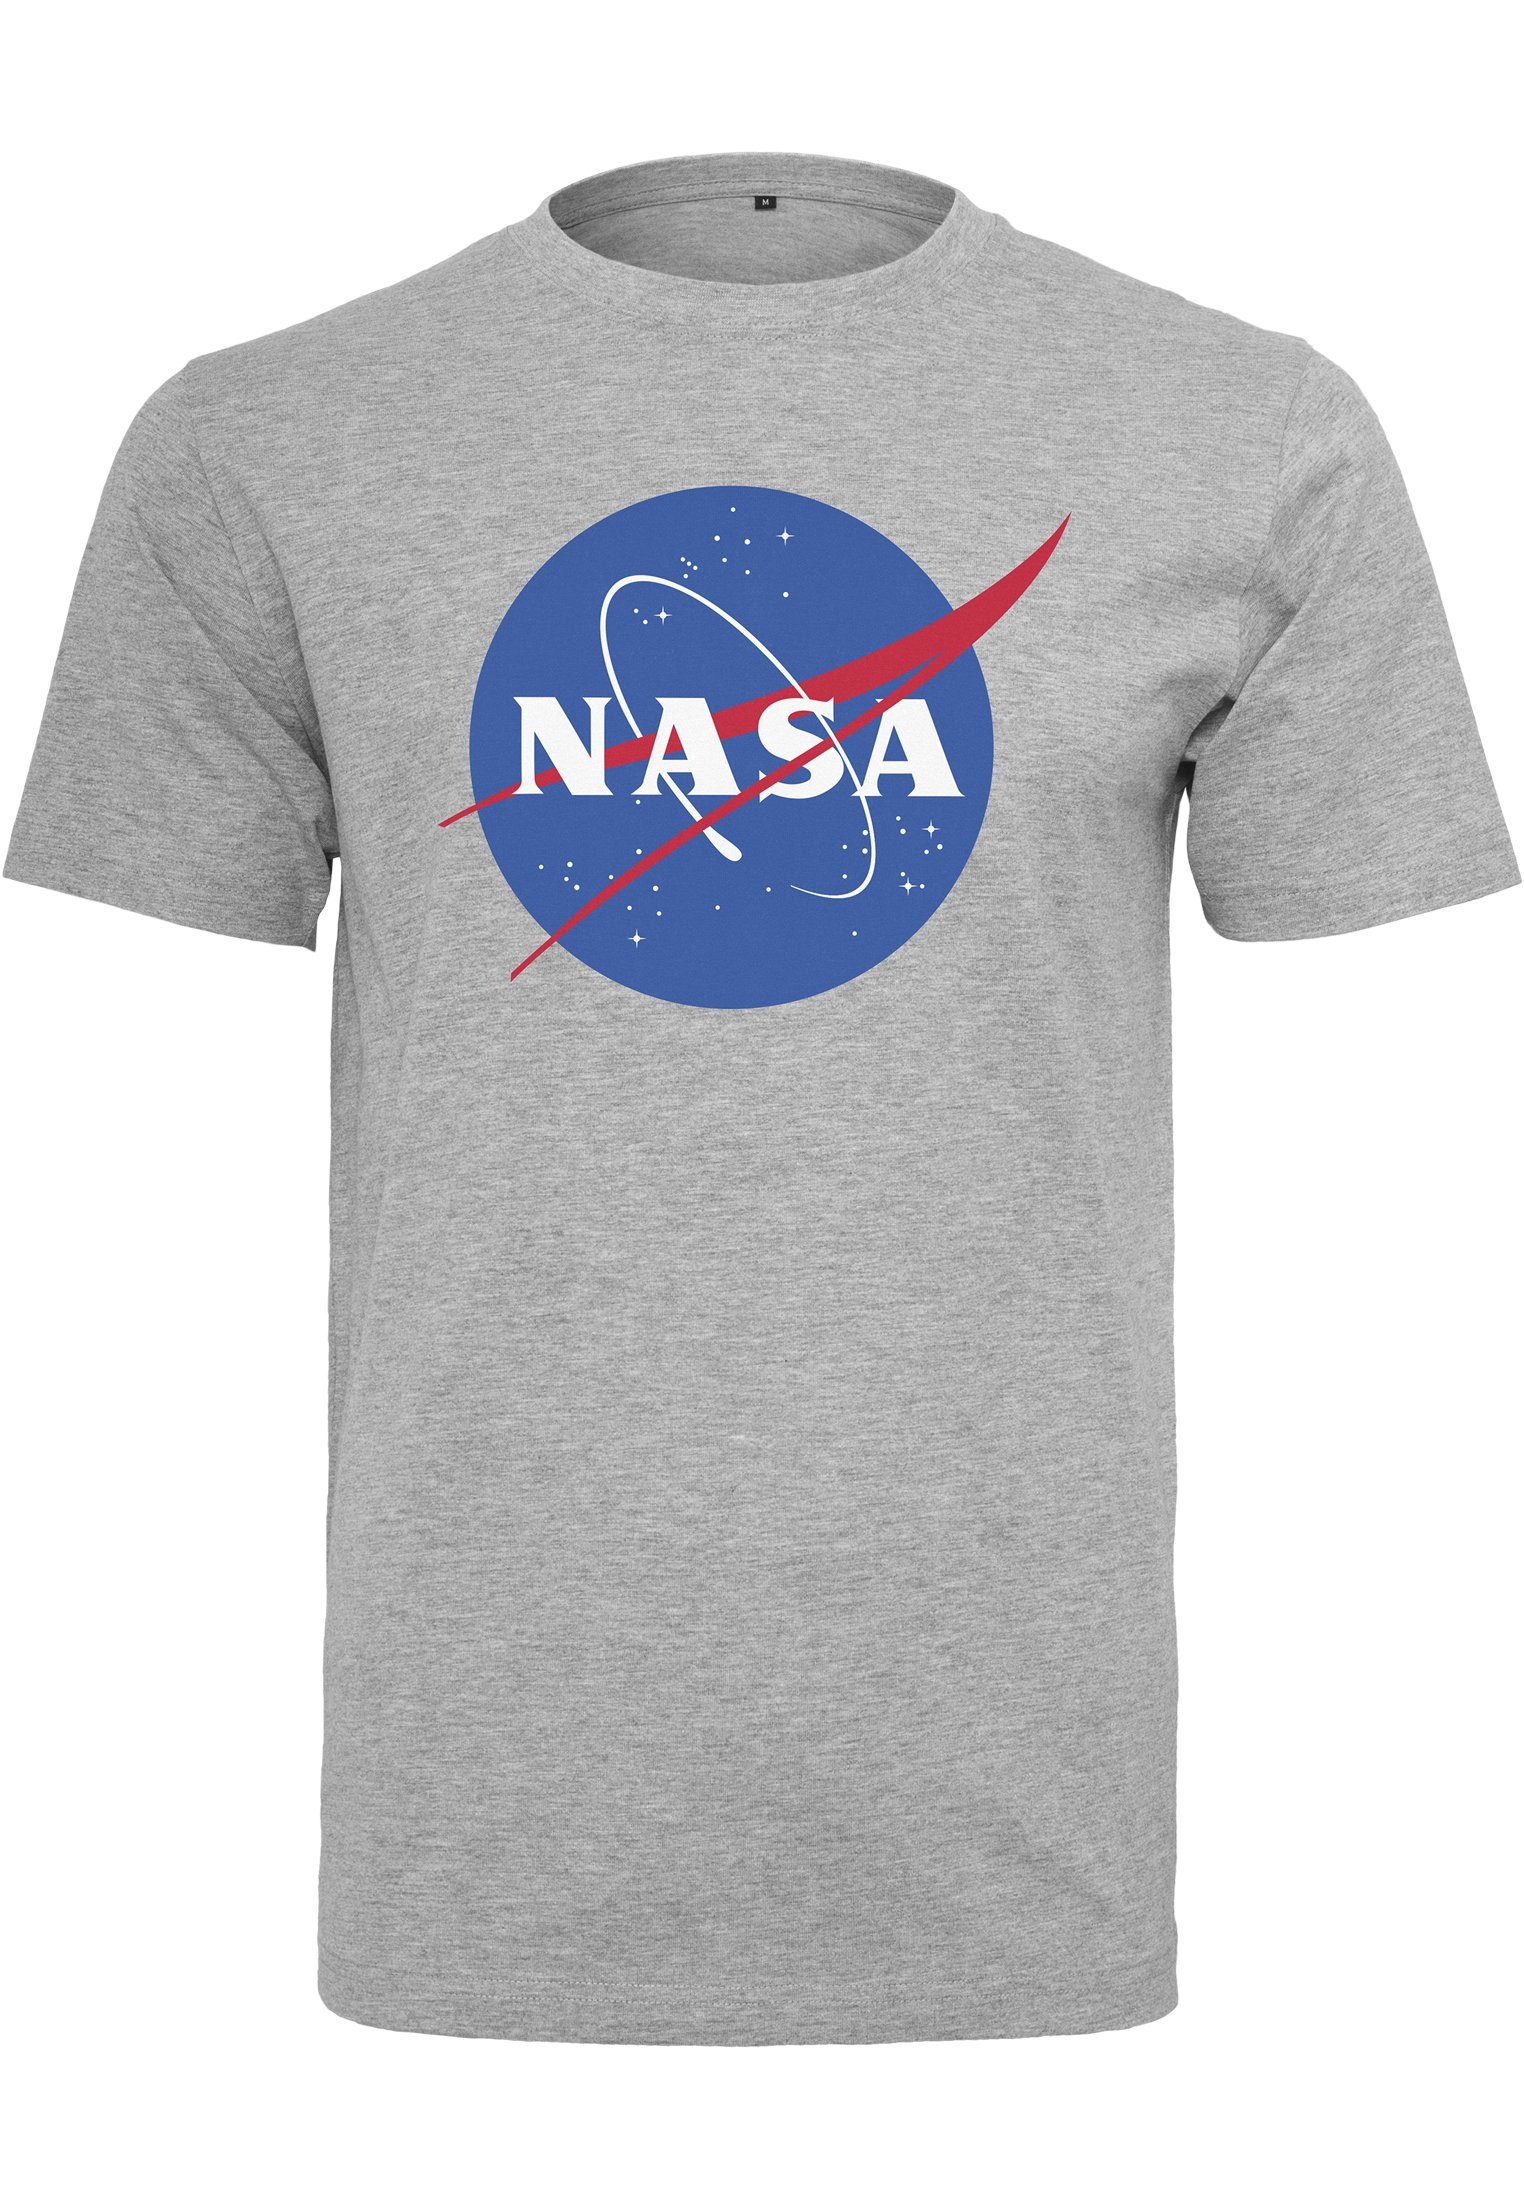 Tee Herren T-Shirt Mister (1-tlg) NASA Tee heathergrey MisterTee